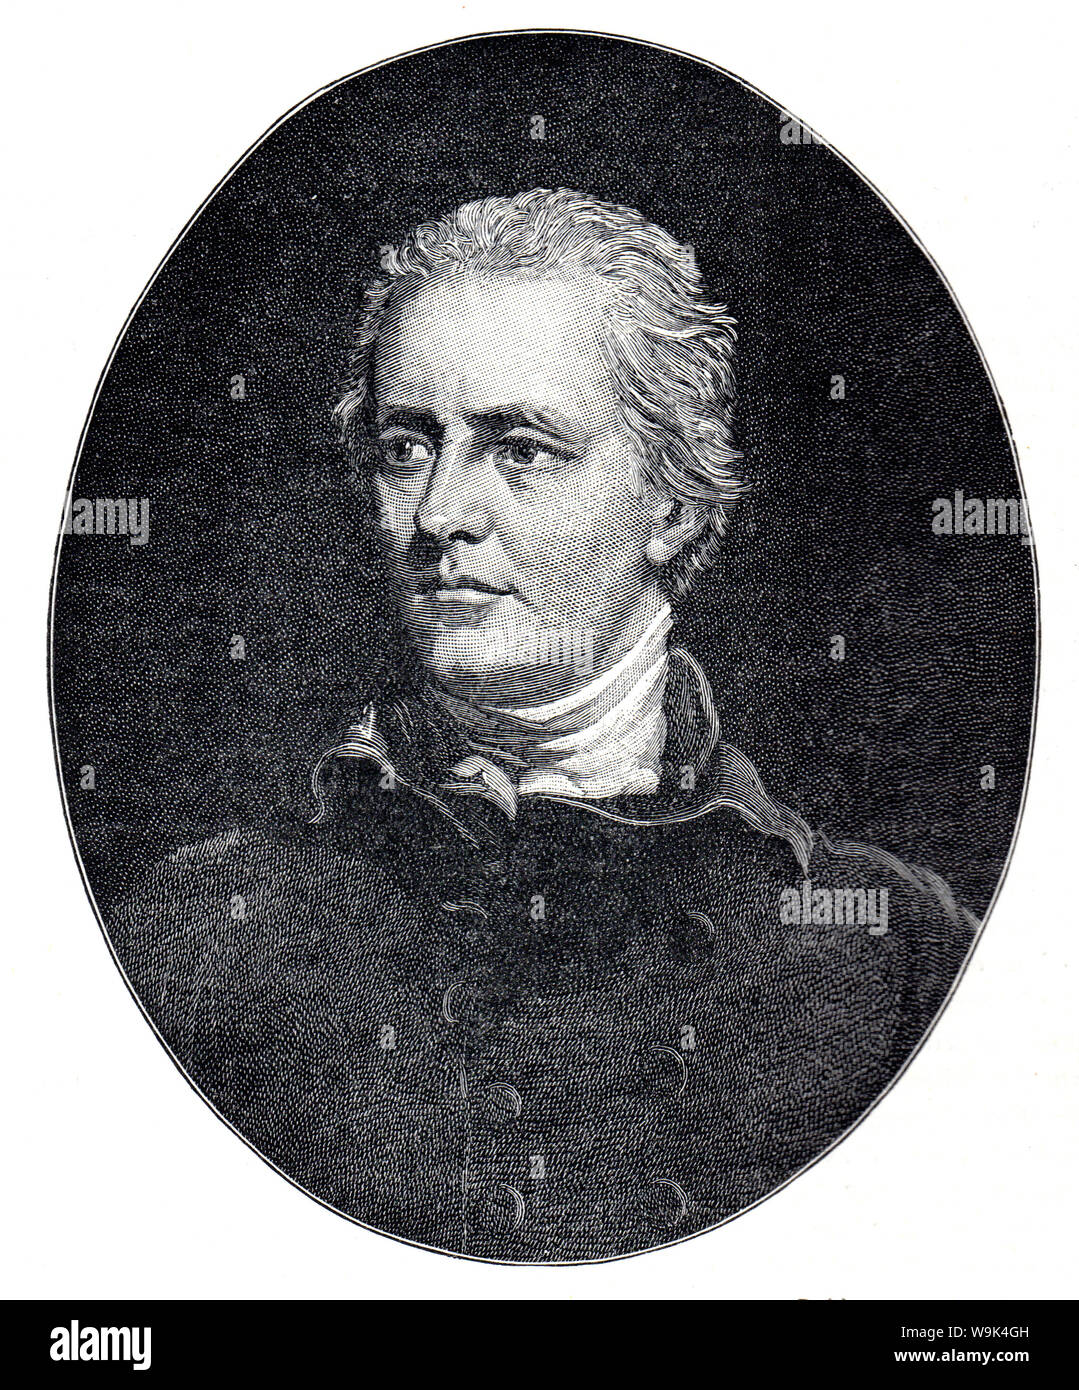 Porträt von William Pitt der Ältere, 1st Earl of Chatham, 1st Earl of Chatham, Schwarz-weiß Illustration; Stockfoto